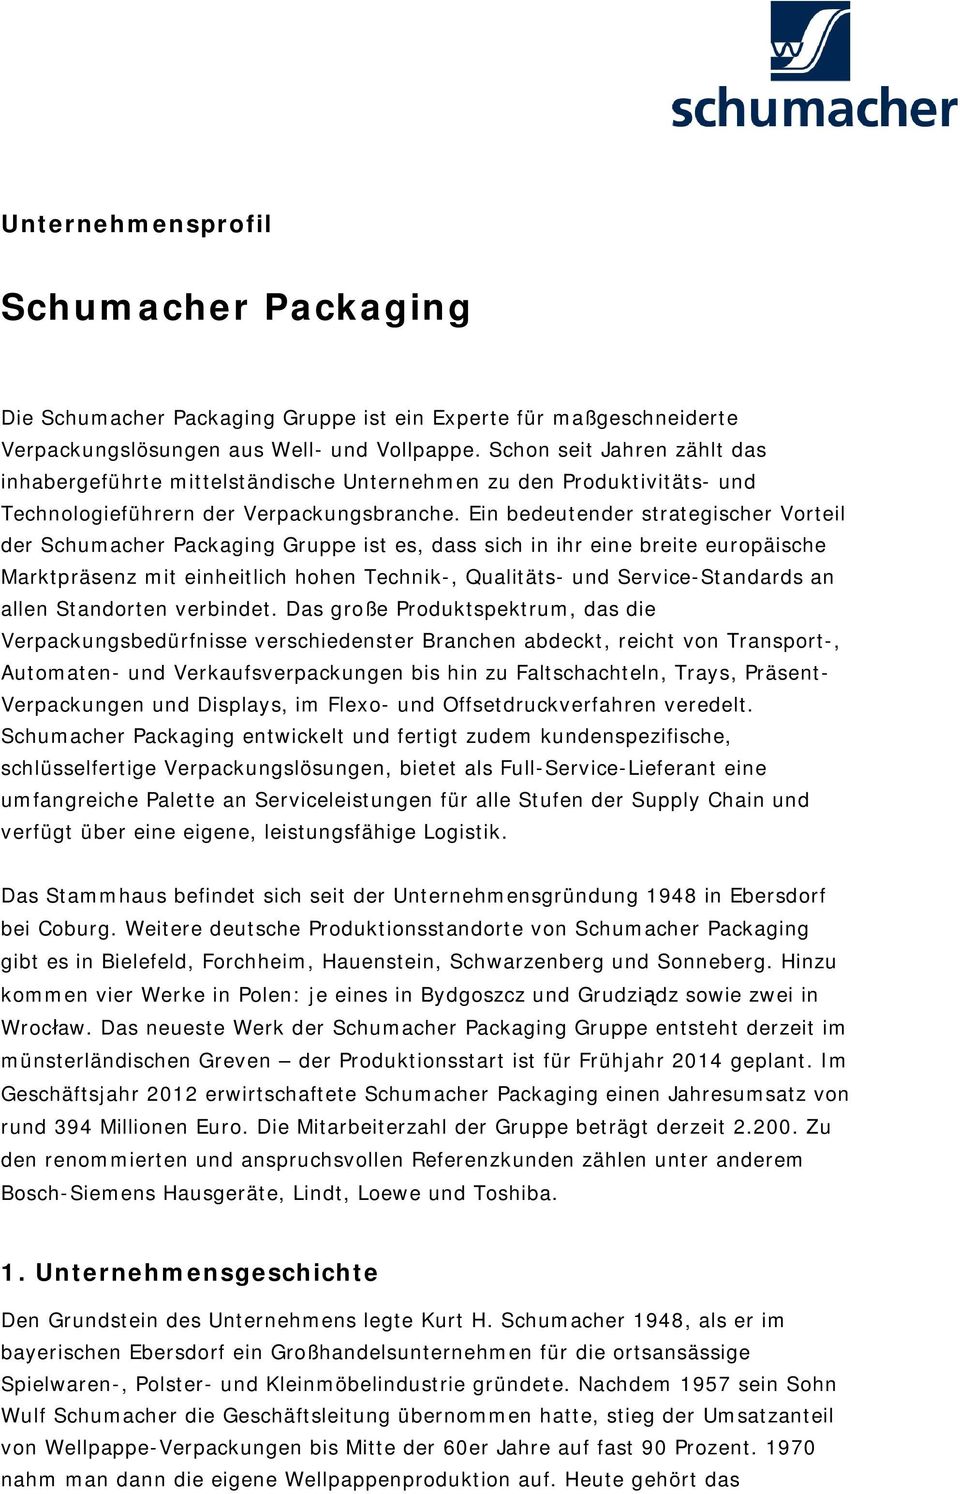 Ein bedeutender strategischer Vorteil der Schumacher Packaging Gruppe ist es, dass sich in ihr eine breite europäische Marktpräsenz mit einheitlich hohen Technik-, Qualitäts- und Service-Standards an